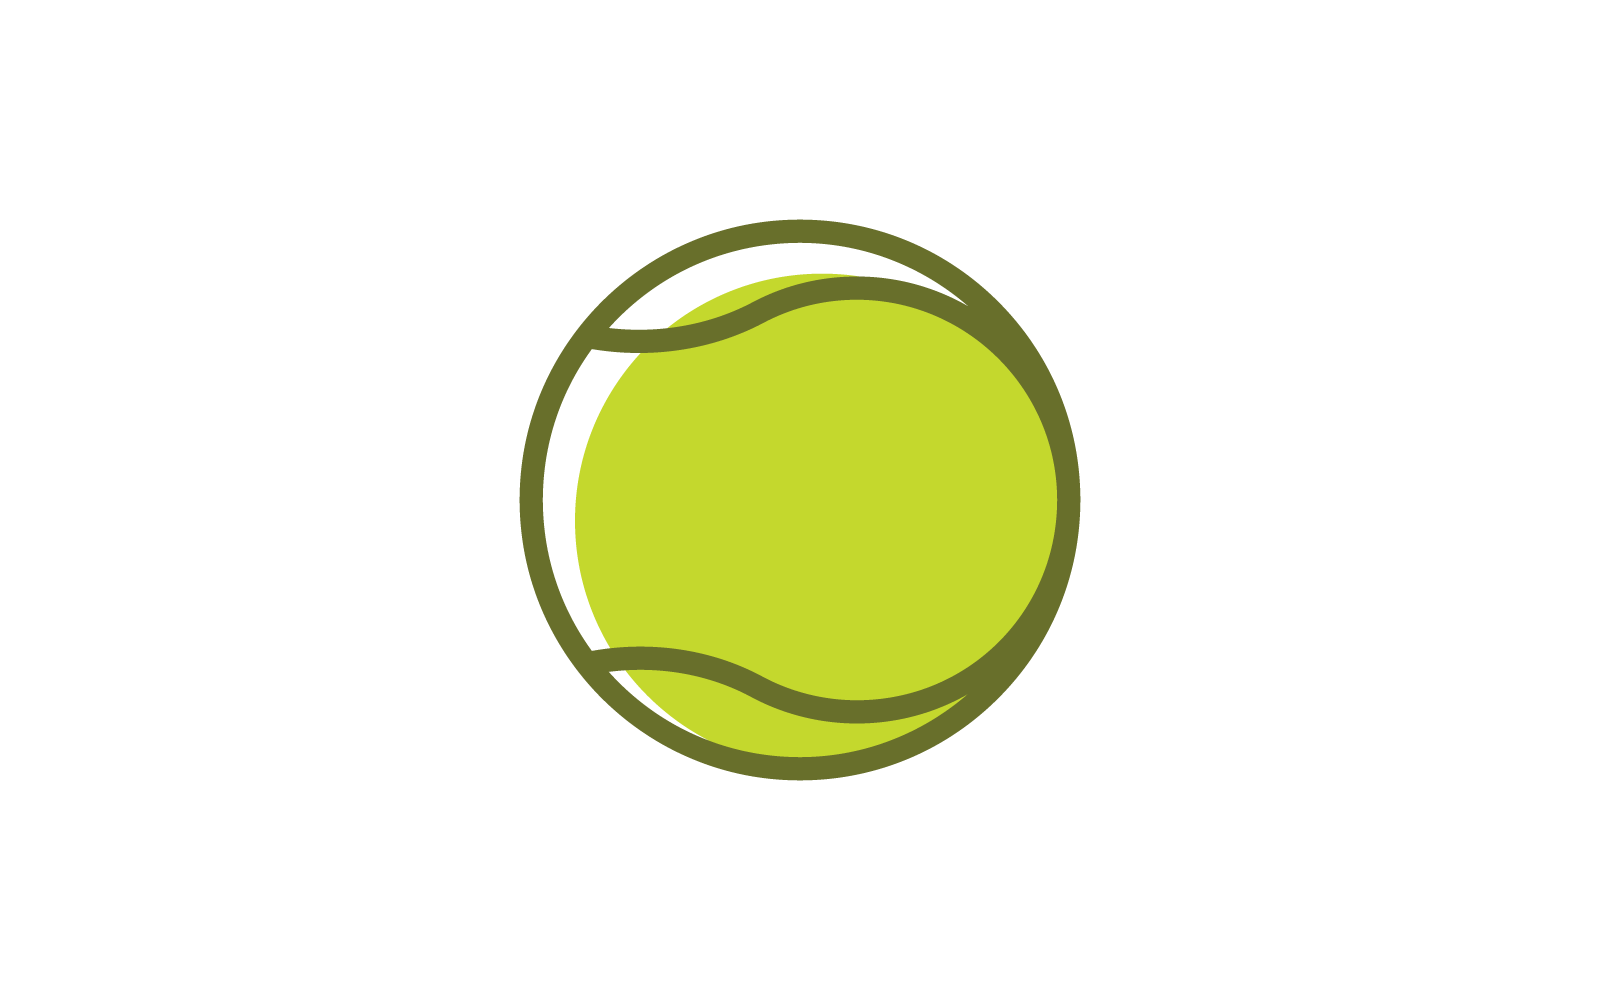 Tennis ball logo vector flat design template